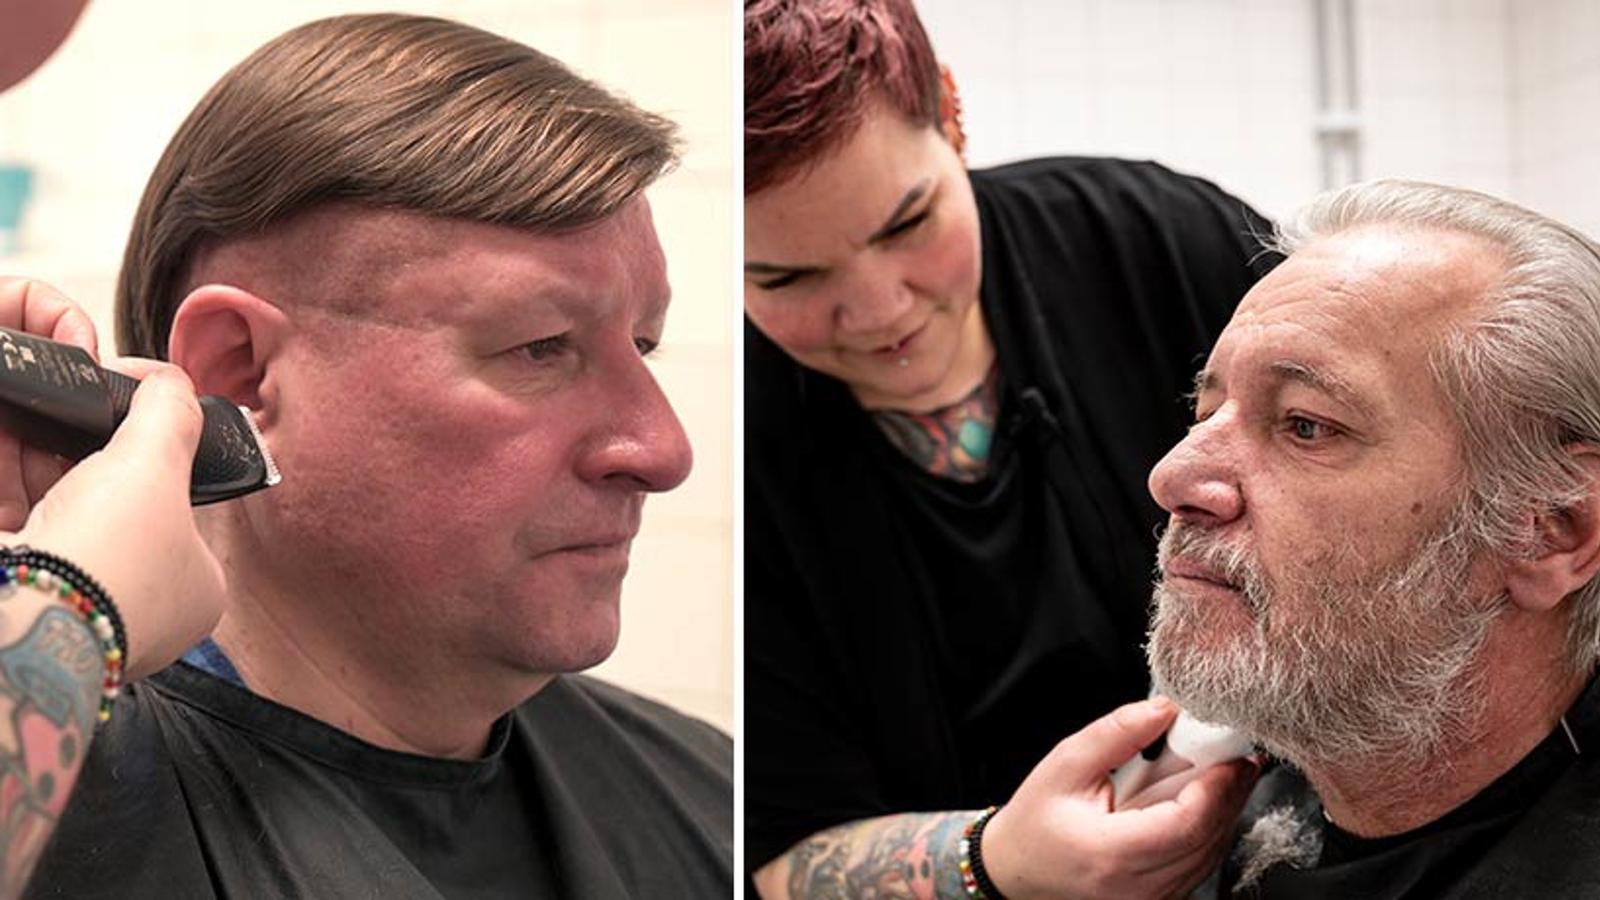 Till vänster: En man, Rave, som får håret klippt och tittar förbi kameran. Till höger: En äldre man, Jari, får sitt skägg rakat av frisören Marika.